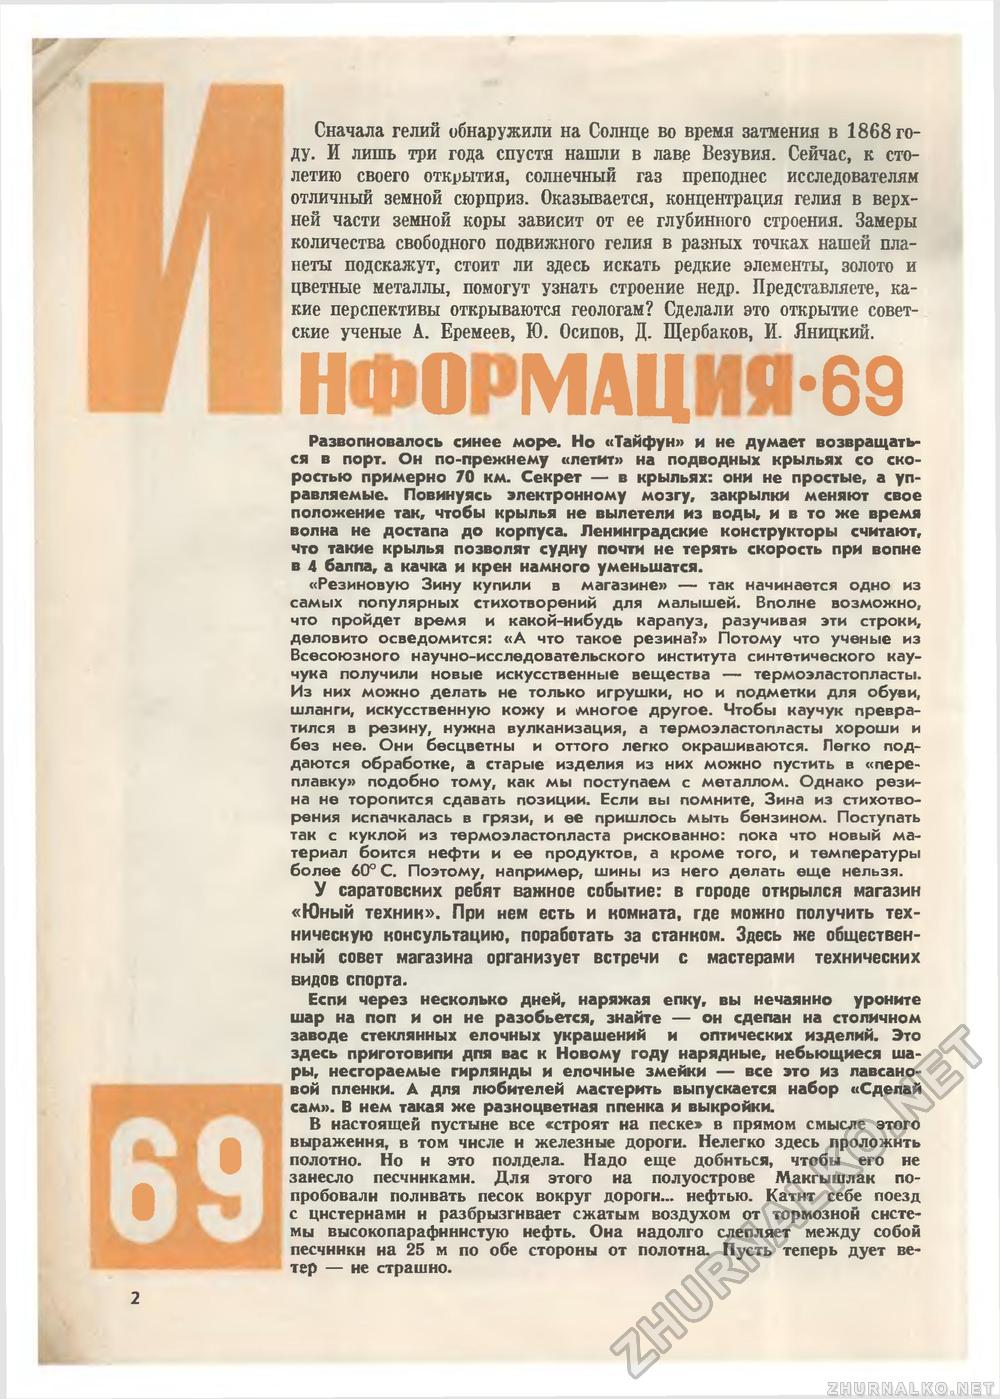   1969-12,  4